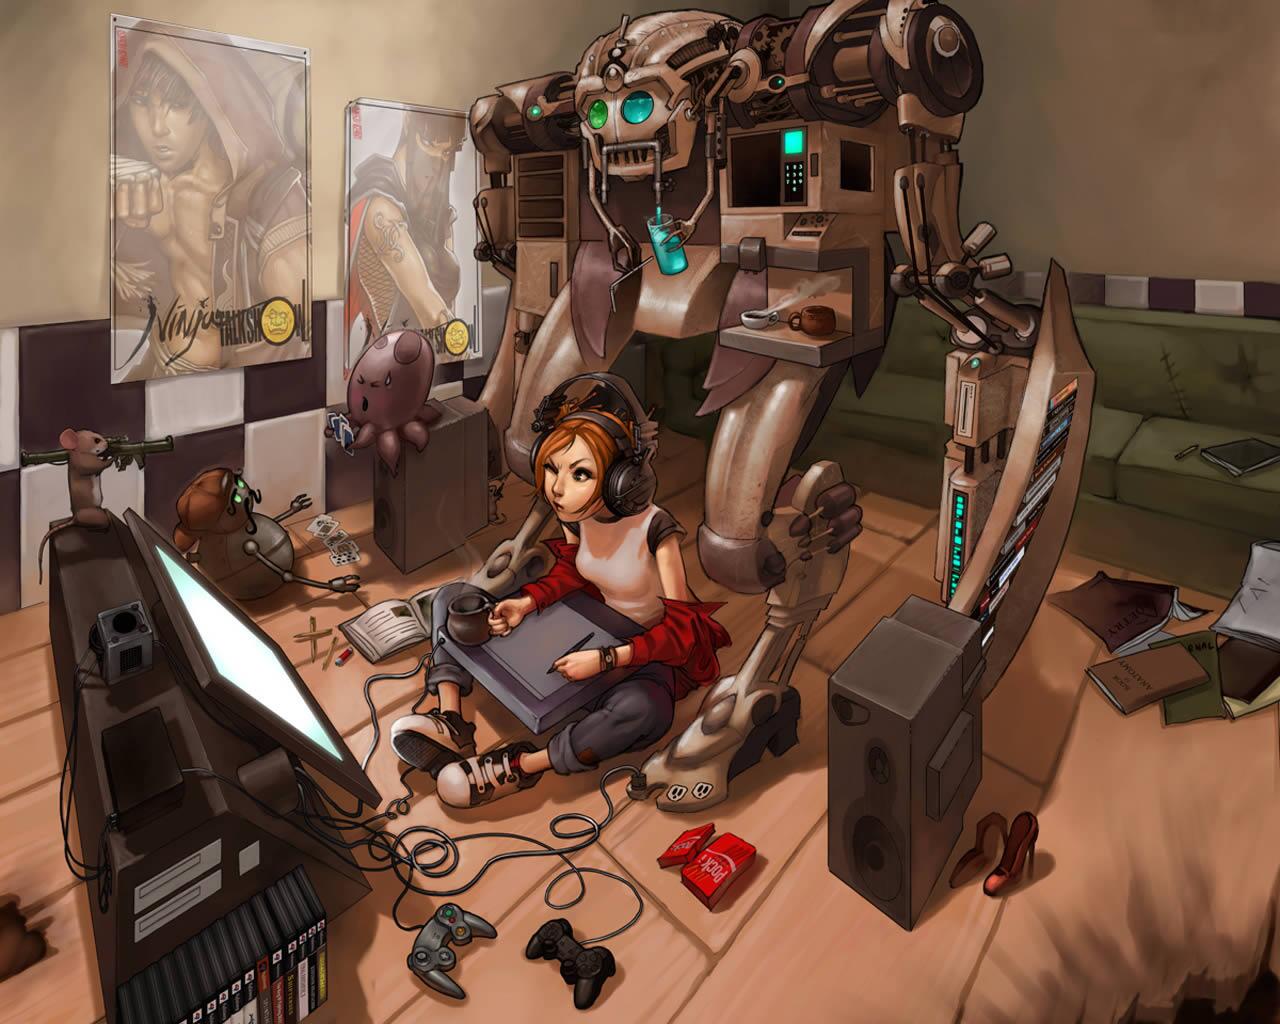 無人機bot בטוויטר 女の子のゲーマー Devushka Gejmer ロシアのサイトで公開されていた女の子ゲーマーのイラスト 女の子の側にはロボットやゲーム機のコントローラなどが散らばっている ペンタブで絵を描いてるように思える Http T Co Ayvetth6y7